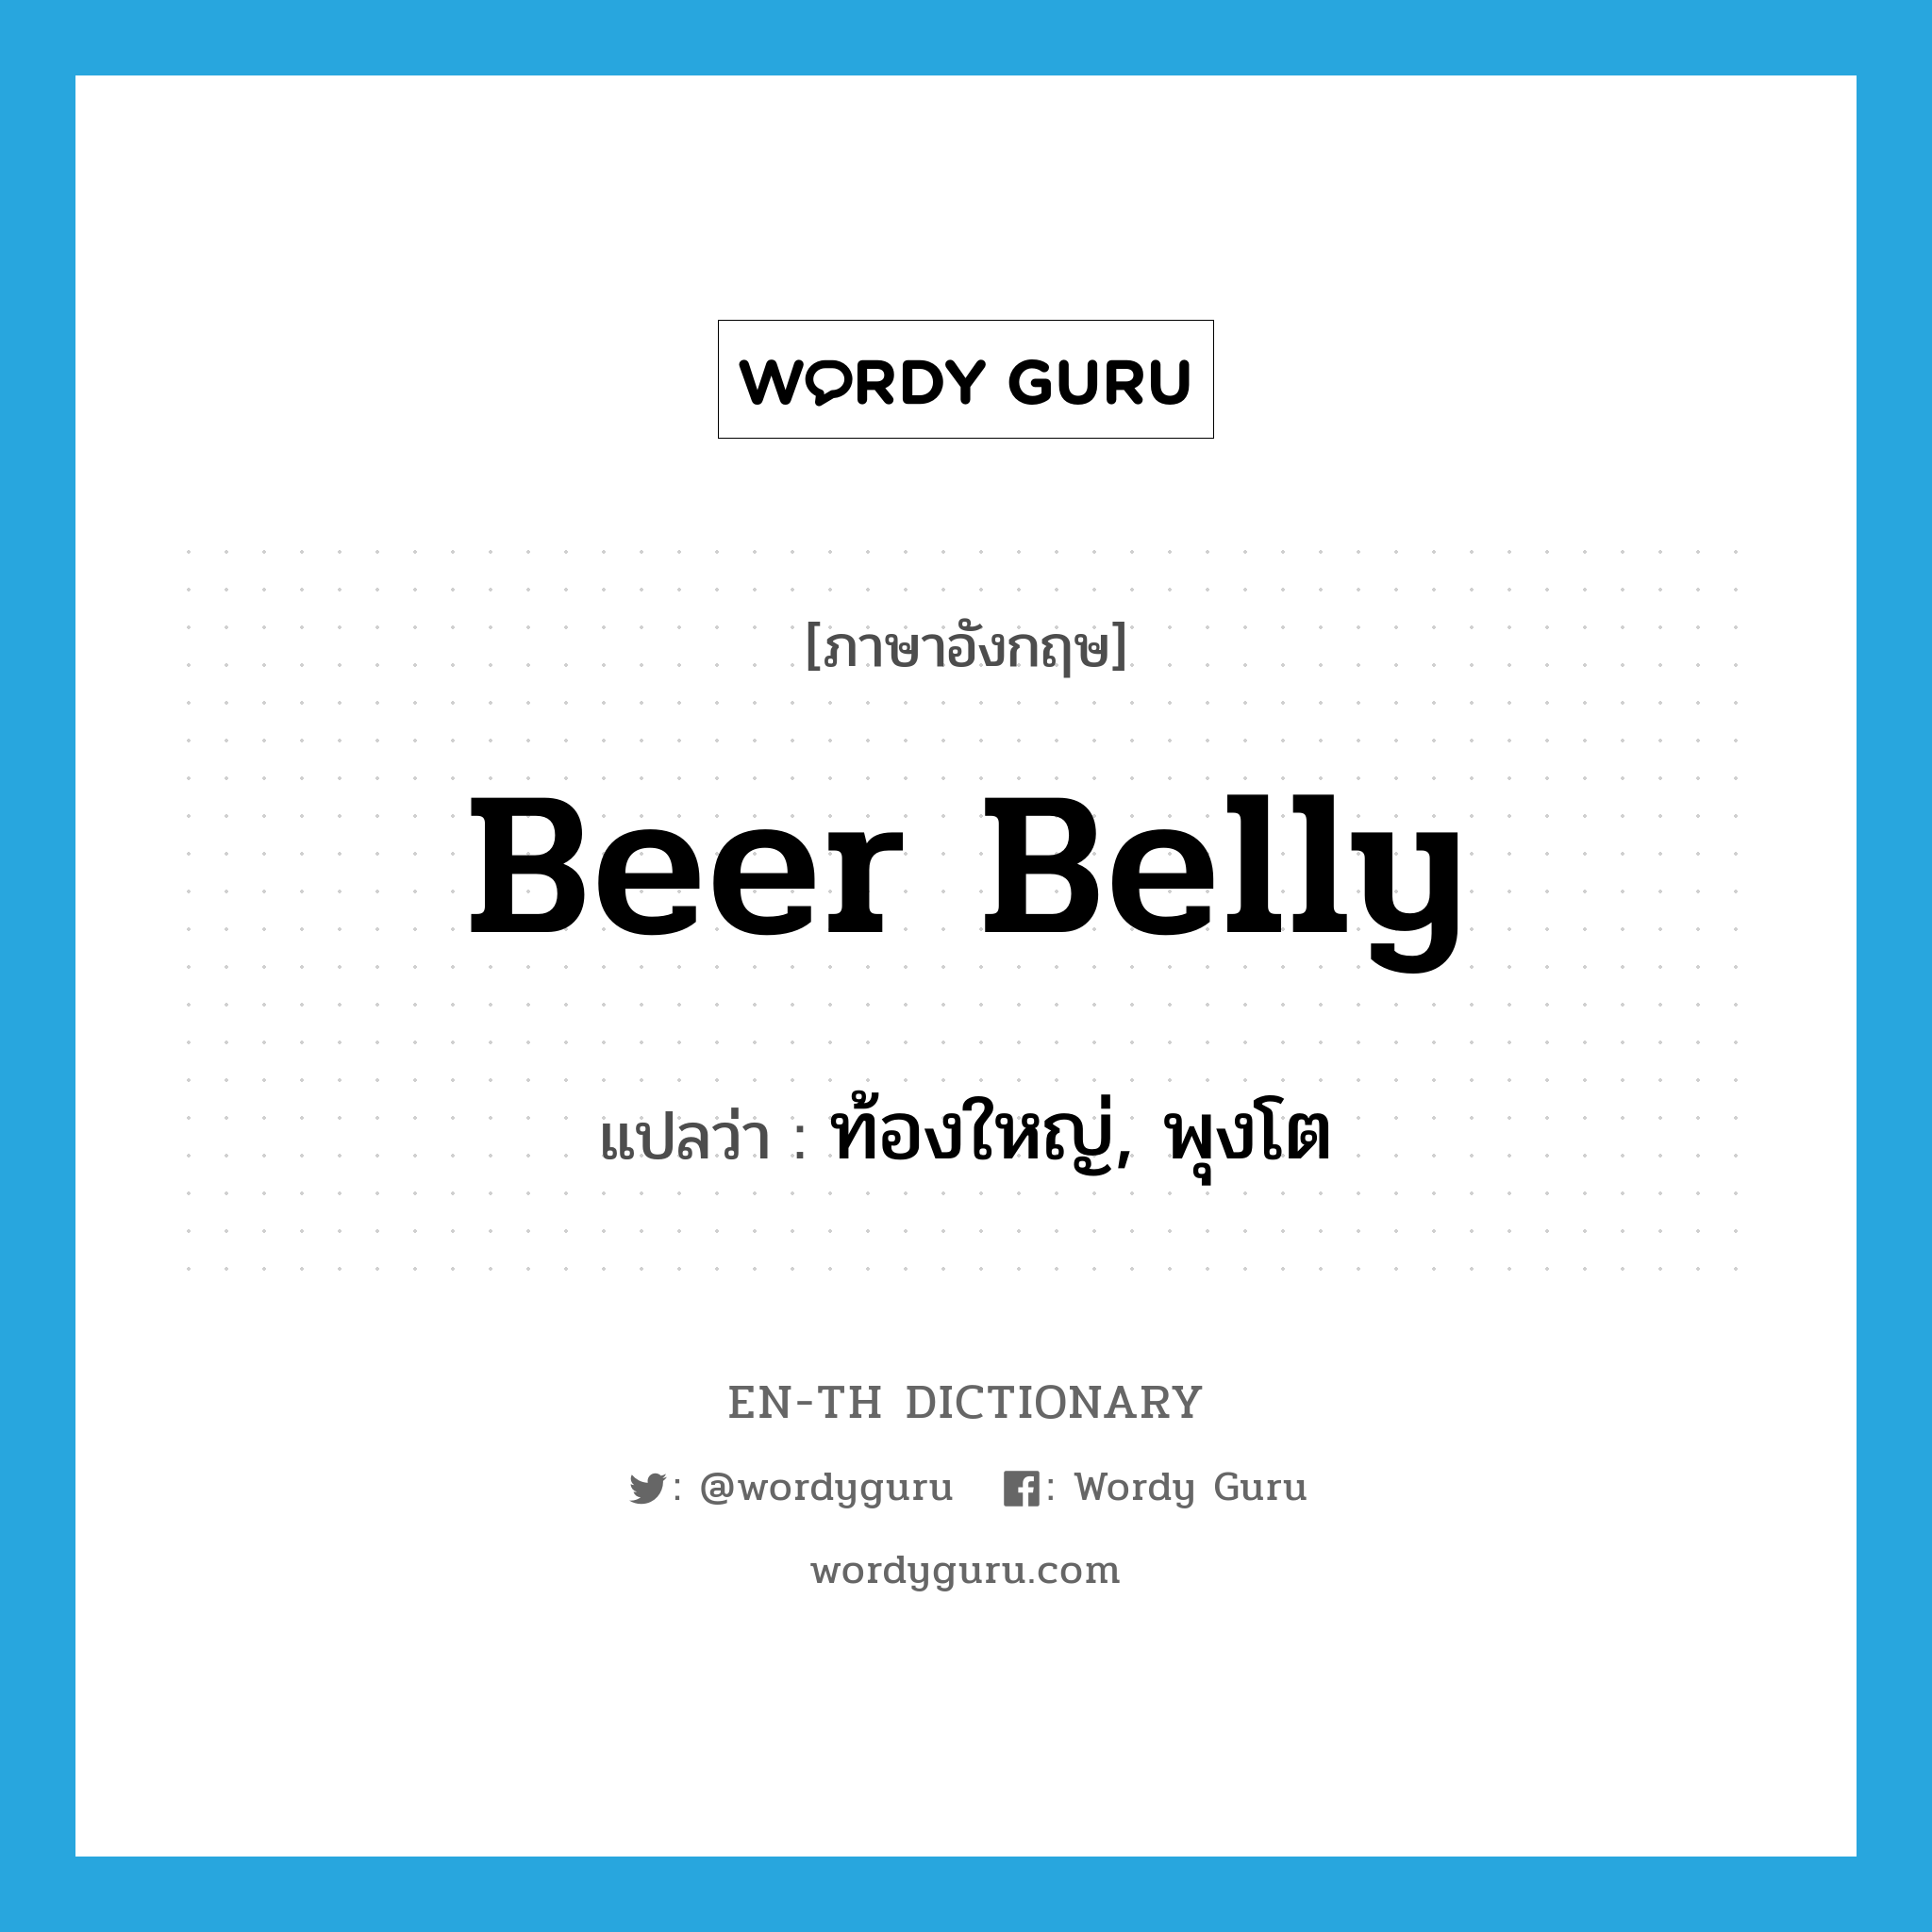 beer belly แปลว่า?, คำศัพท์ภาษาอังกฤษ beer belly แปลว่า ท้องใหญ่, พุงโต ประเภท SL หมวด SL